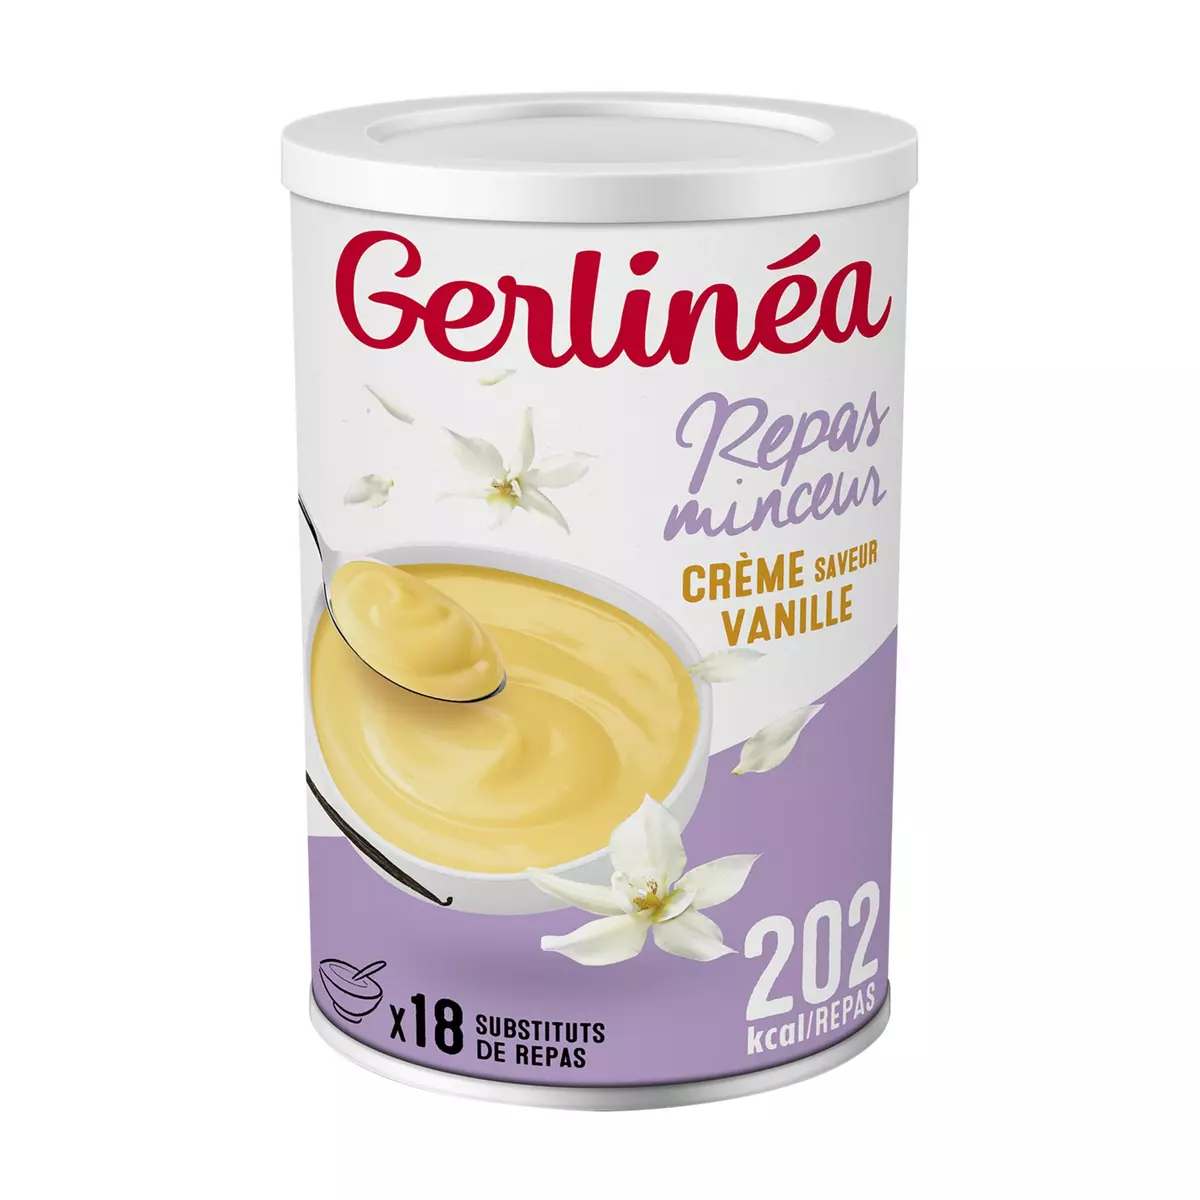 GERLINEA Repas minceur crème saveur vanille 540g